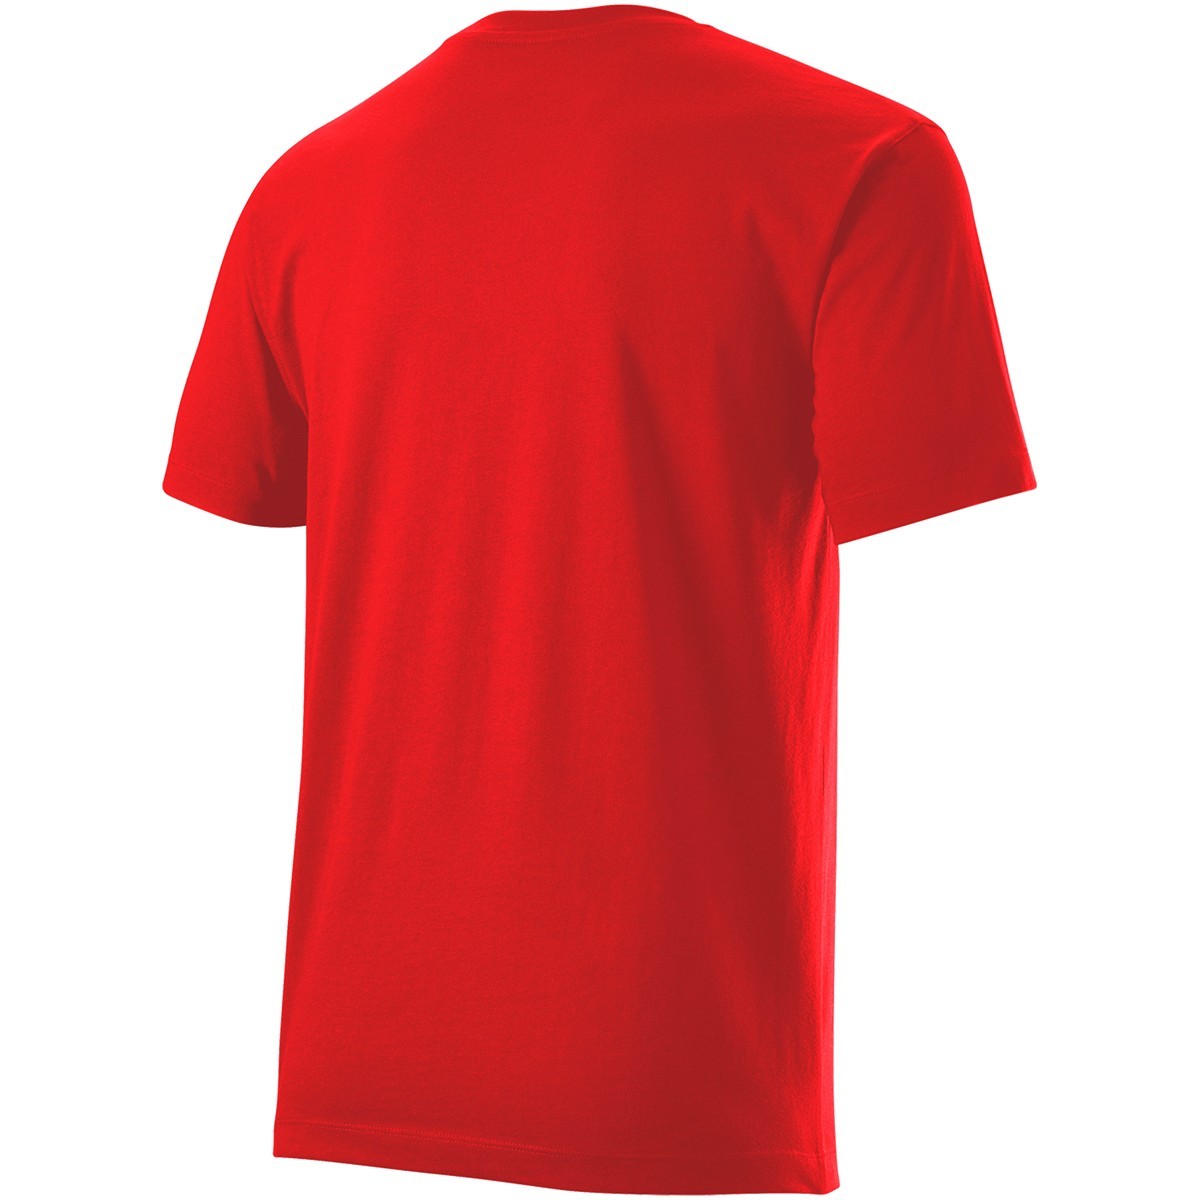 Wilson Bela Tech T-shirt - Red